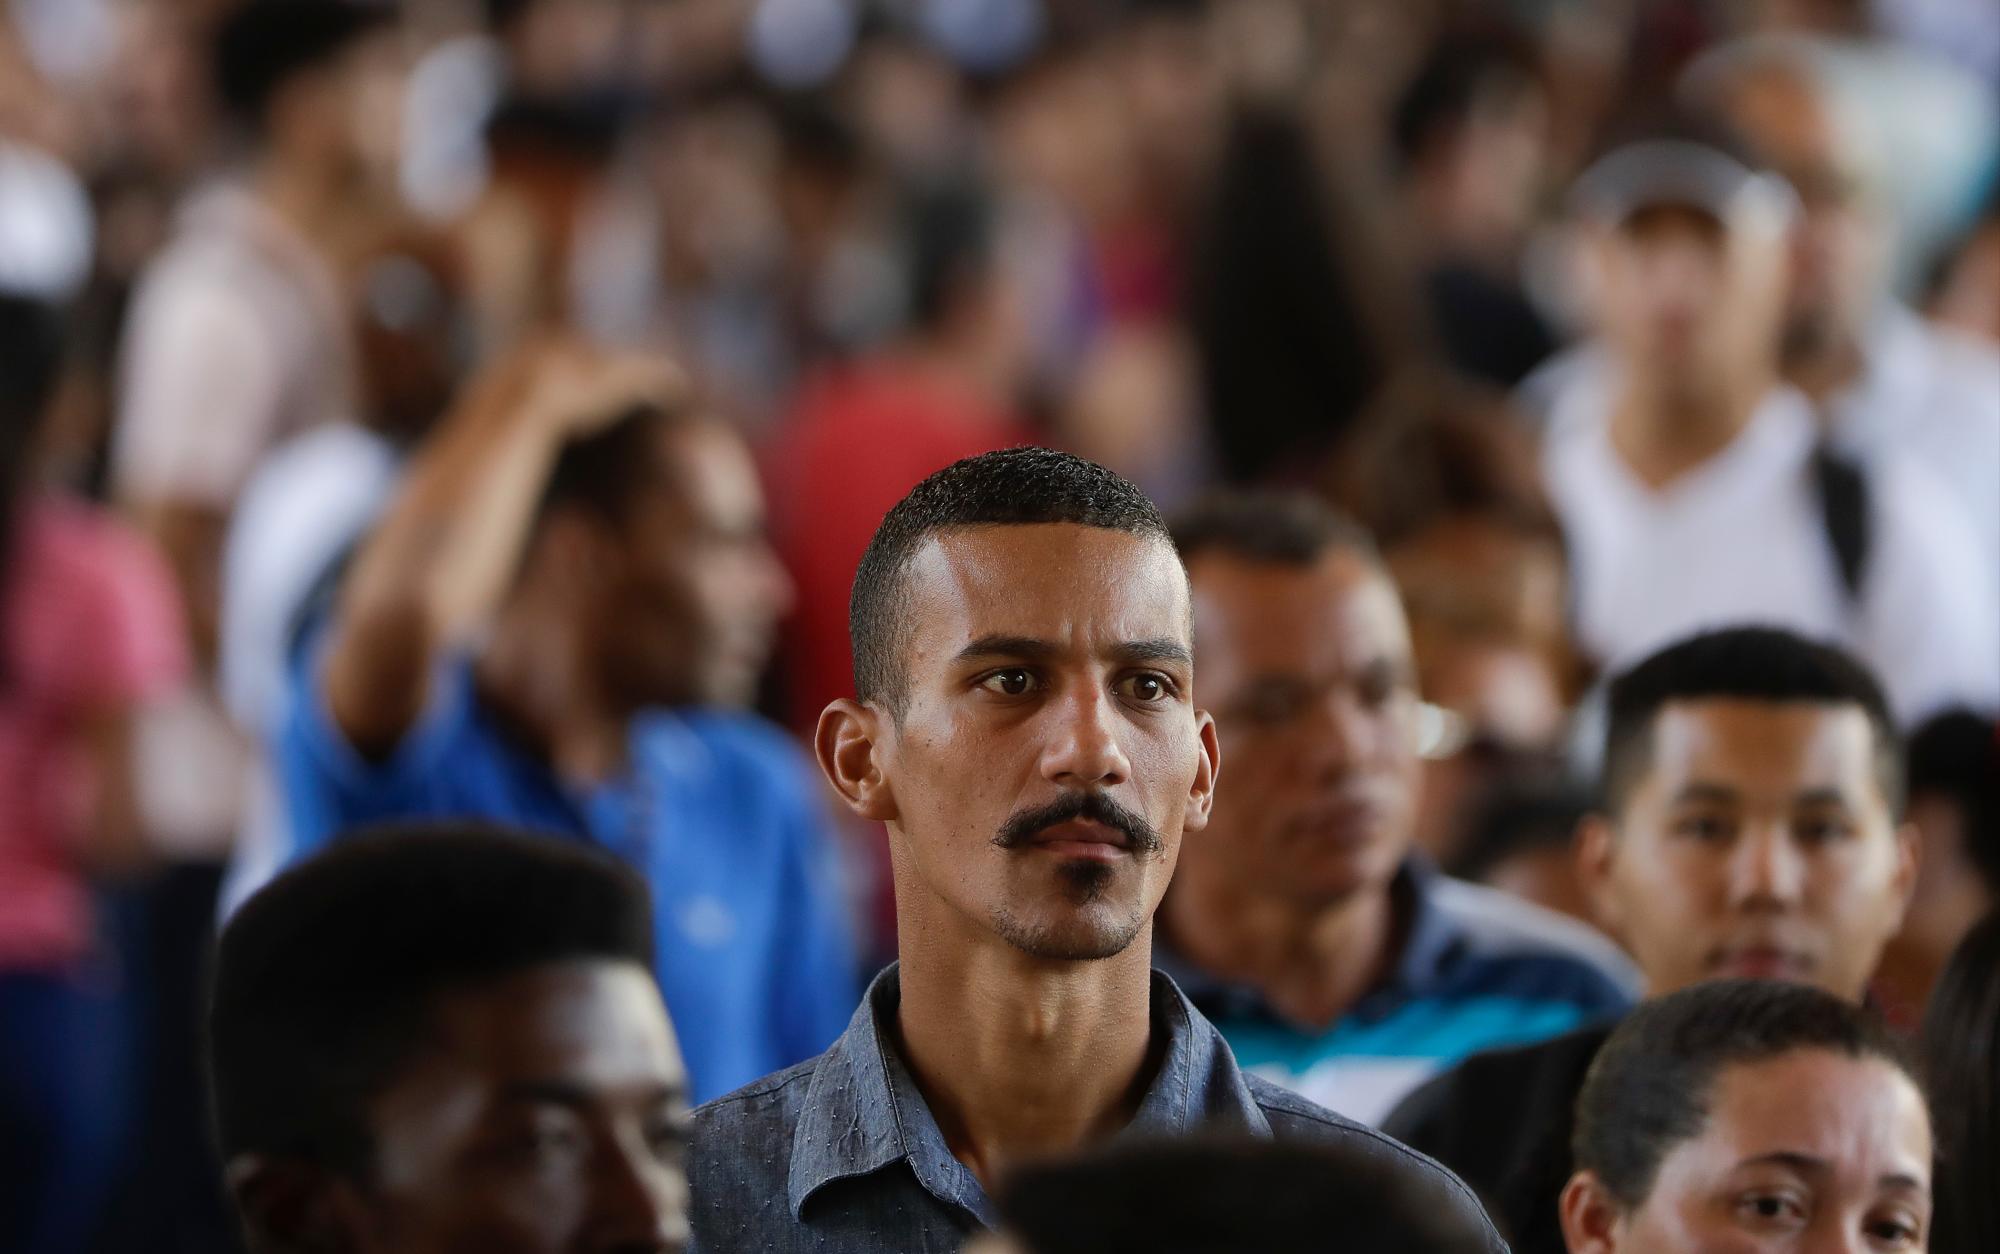  Gerson Alcantara, de 38 años, que ha estado desempleado durante seis meses, está en fila para asistir a una feria de empleo organizada por el gobierno local y un sindicato, en el centro de Sao Paulo, Brasil, el martes 26 de marzo de 2019.